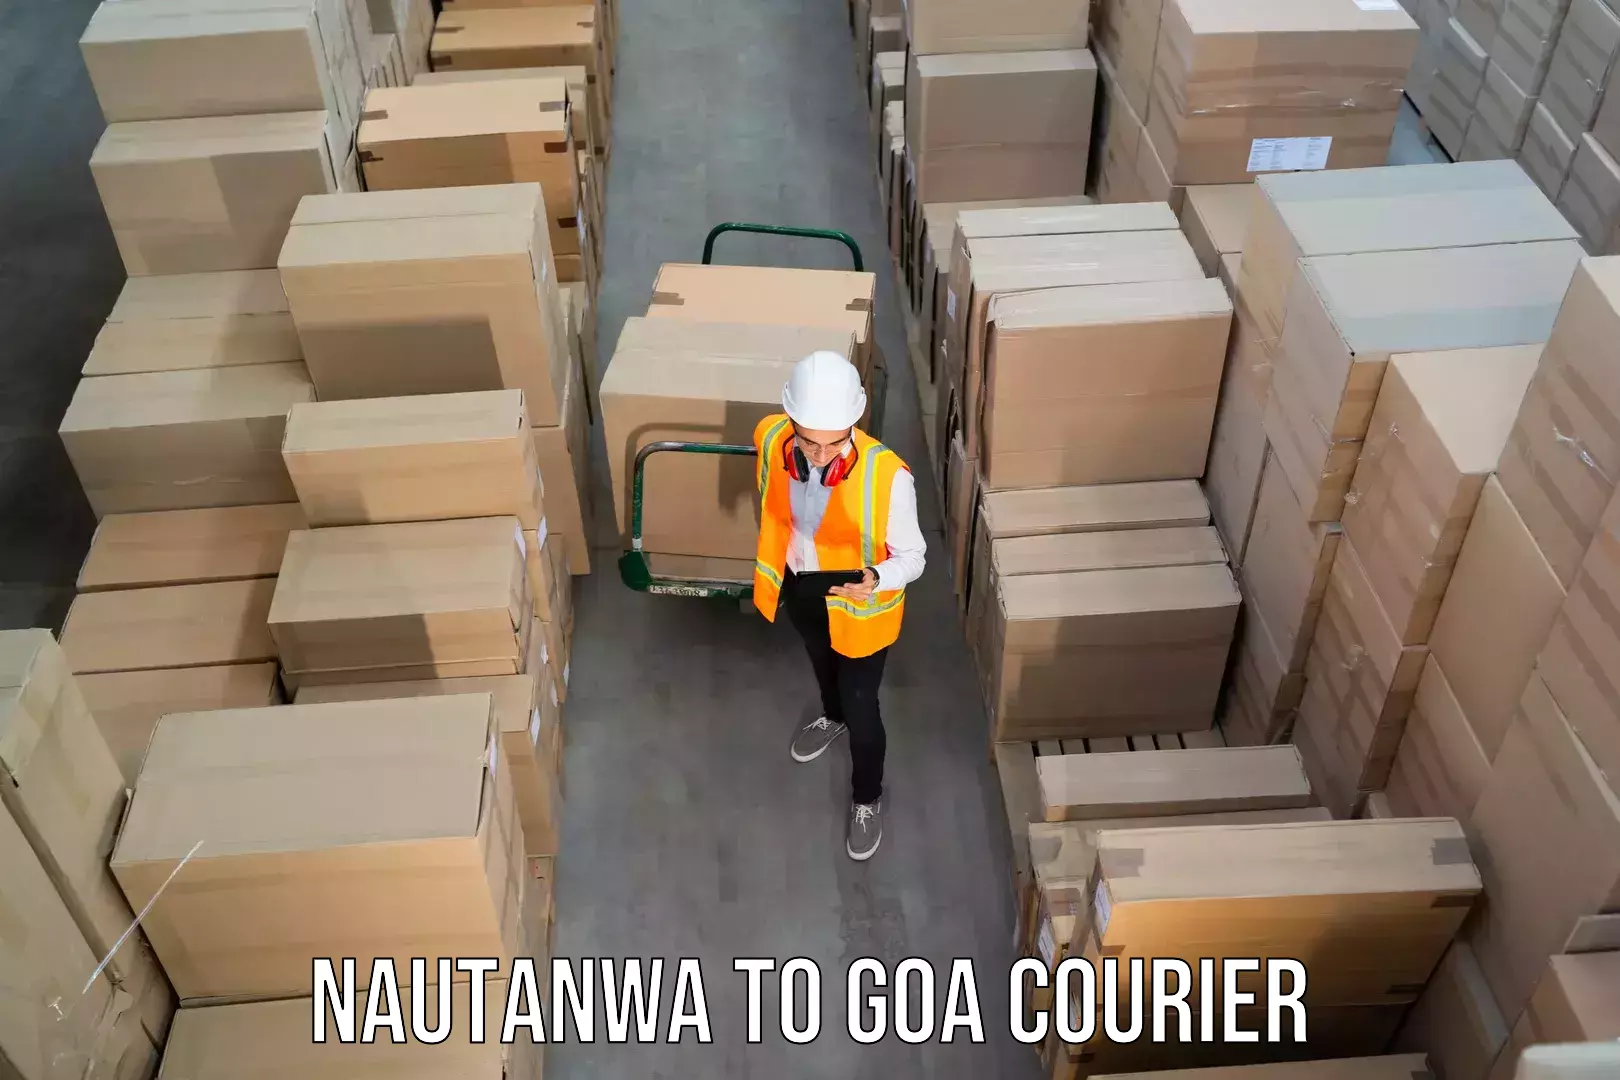 Premium courier services Nautanwa to South Goa